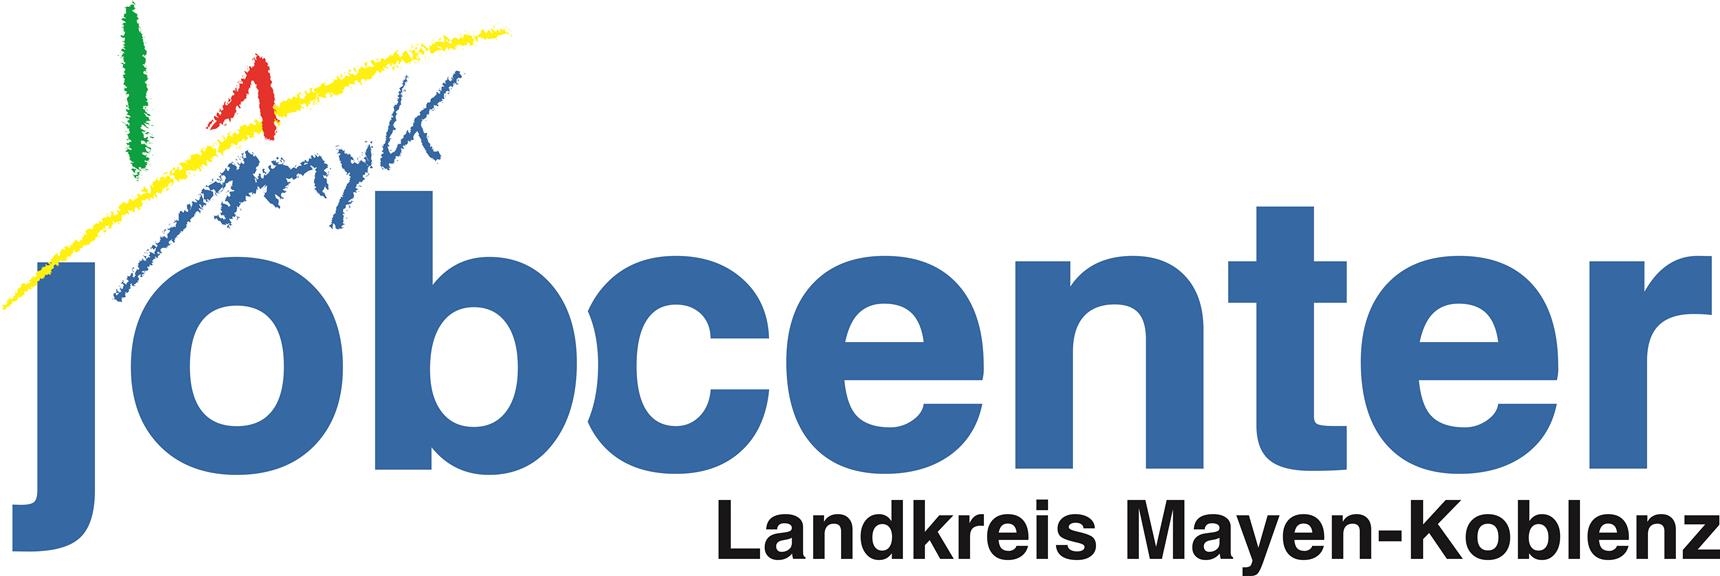 Logo Jobcenter Landkreis Mayen-Koblenz 